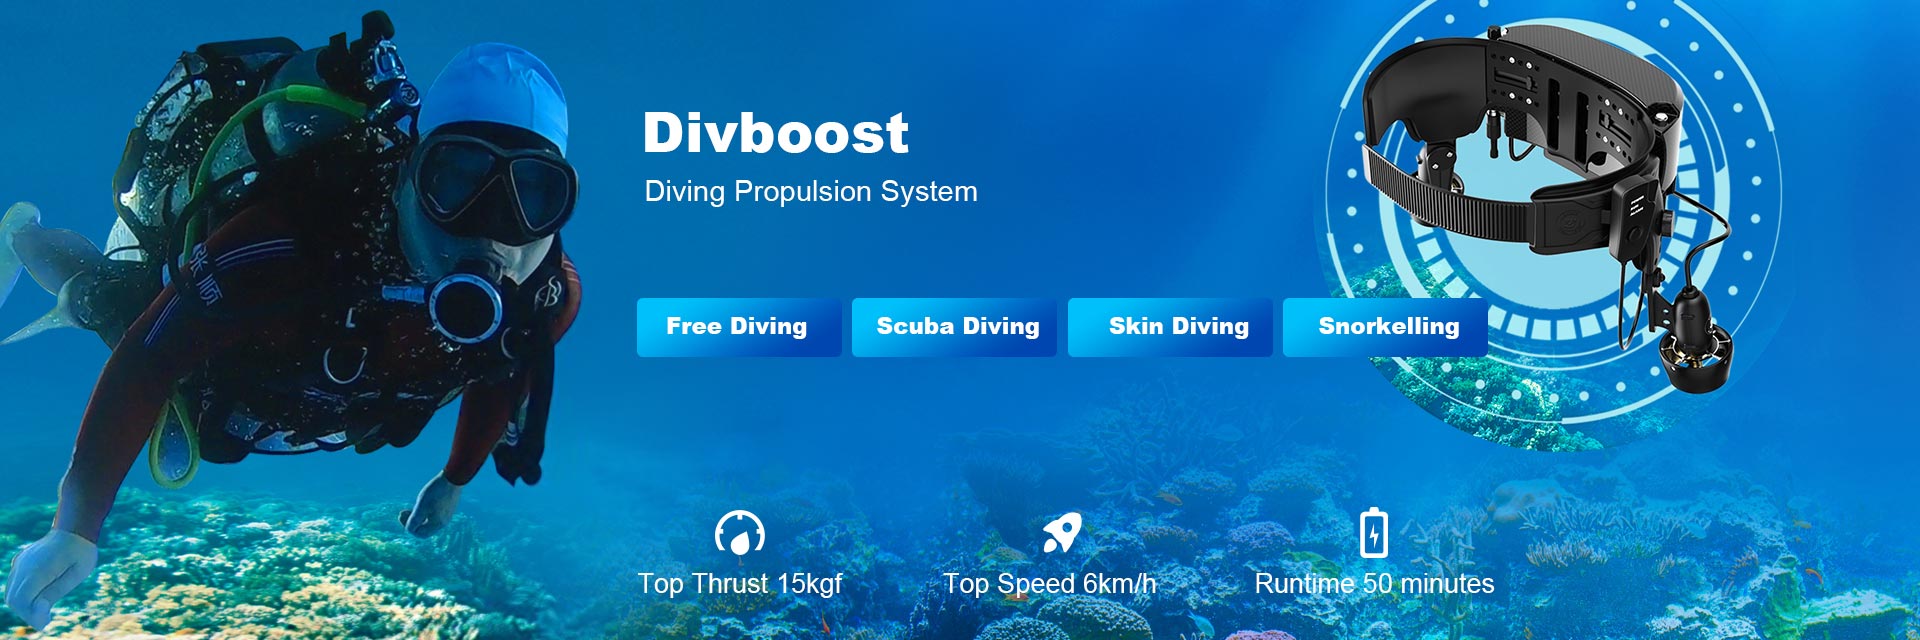 DivBost